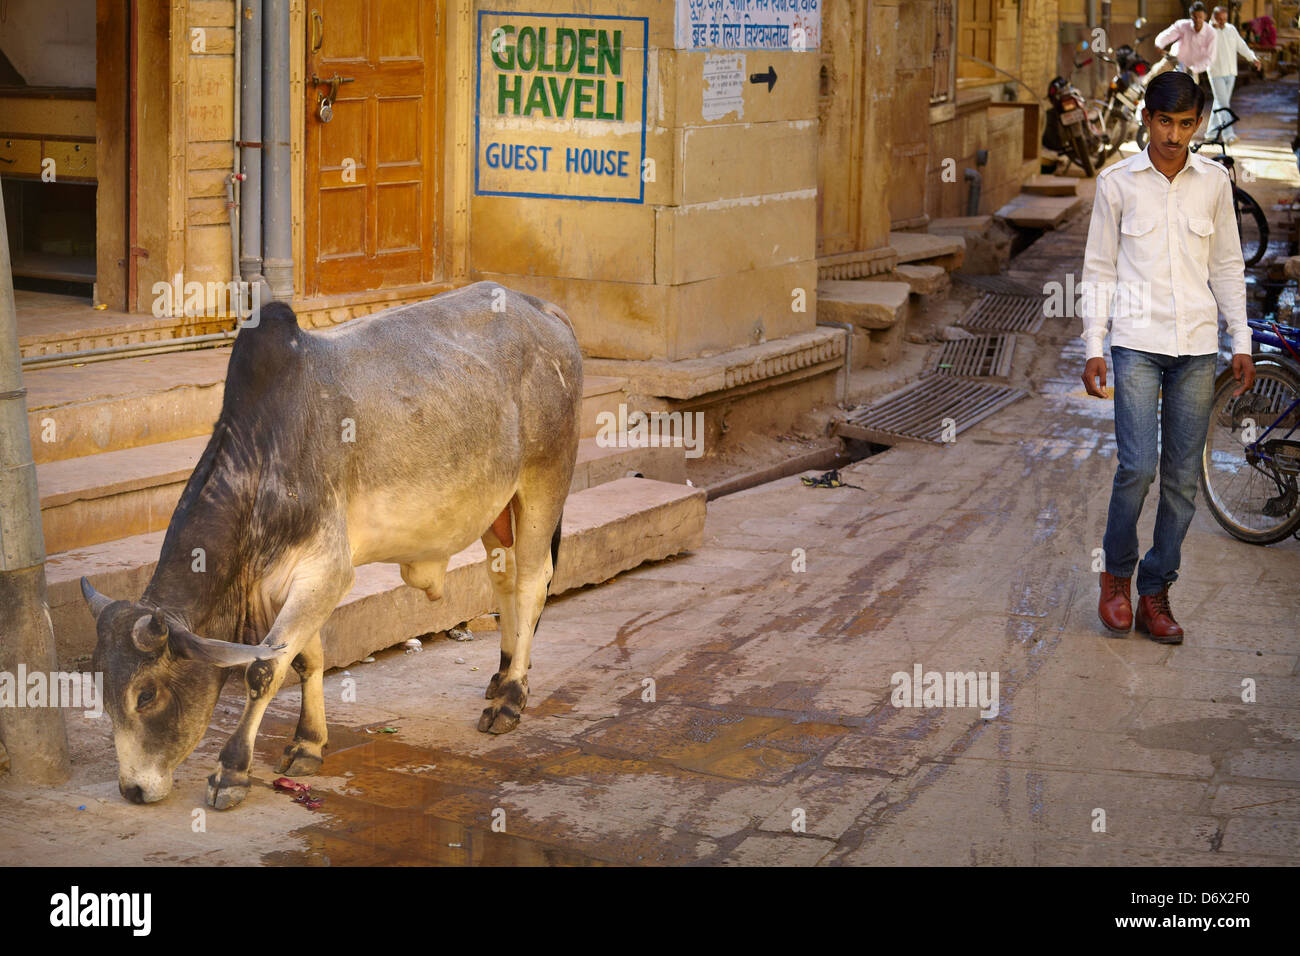 Scène de rue avec des vaches et l'Inde homme marchant, Jaisalmer, Rajasthan, India Banque D'Images